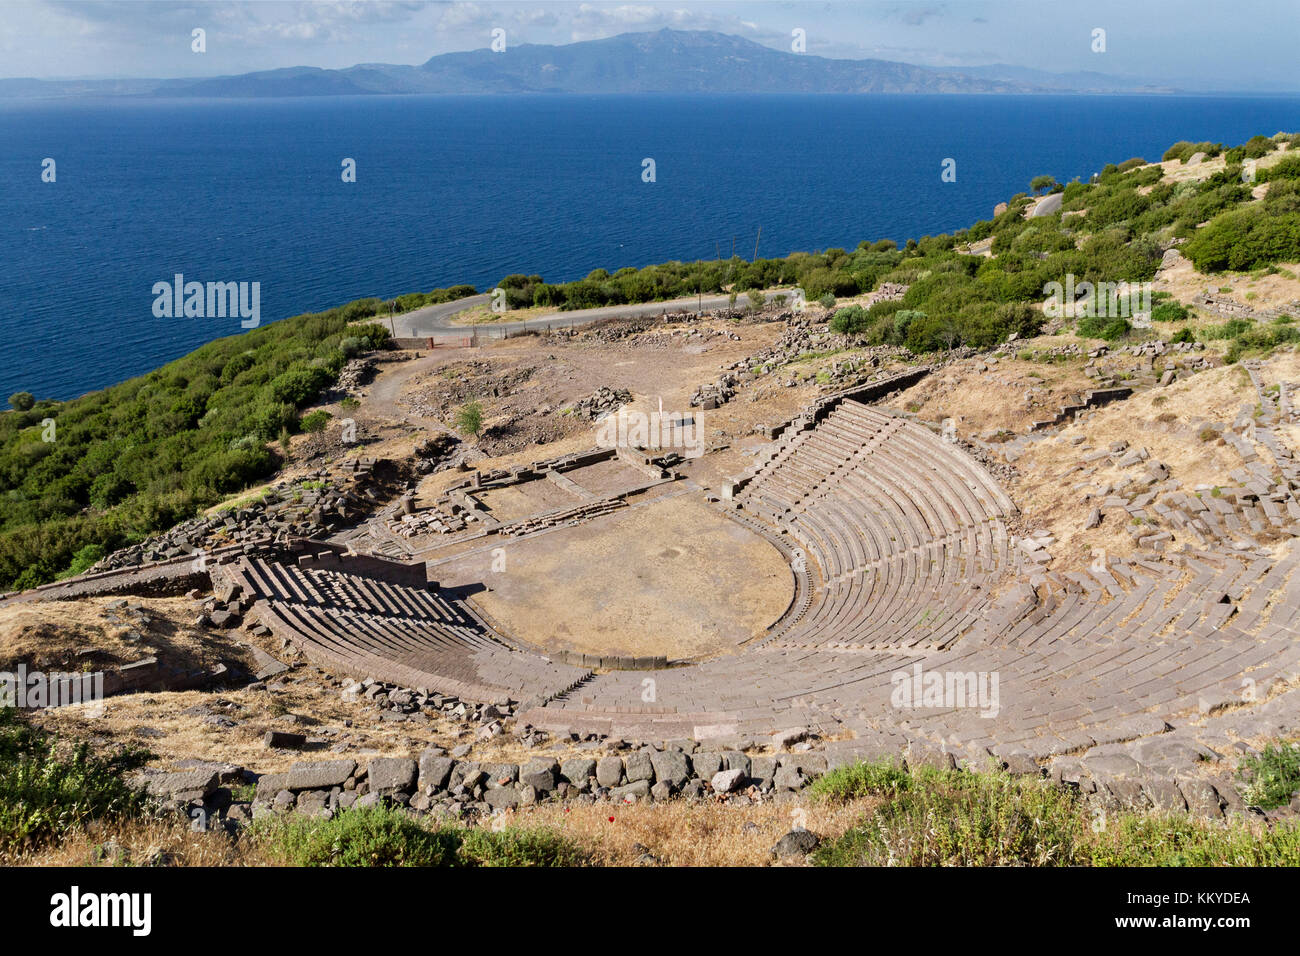 Teatro antico nelle rovine di Assos in Turchia e isola greca, Lesbo sullo sfondo. Foto Stock